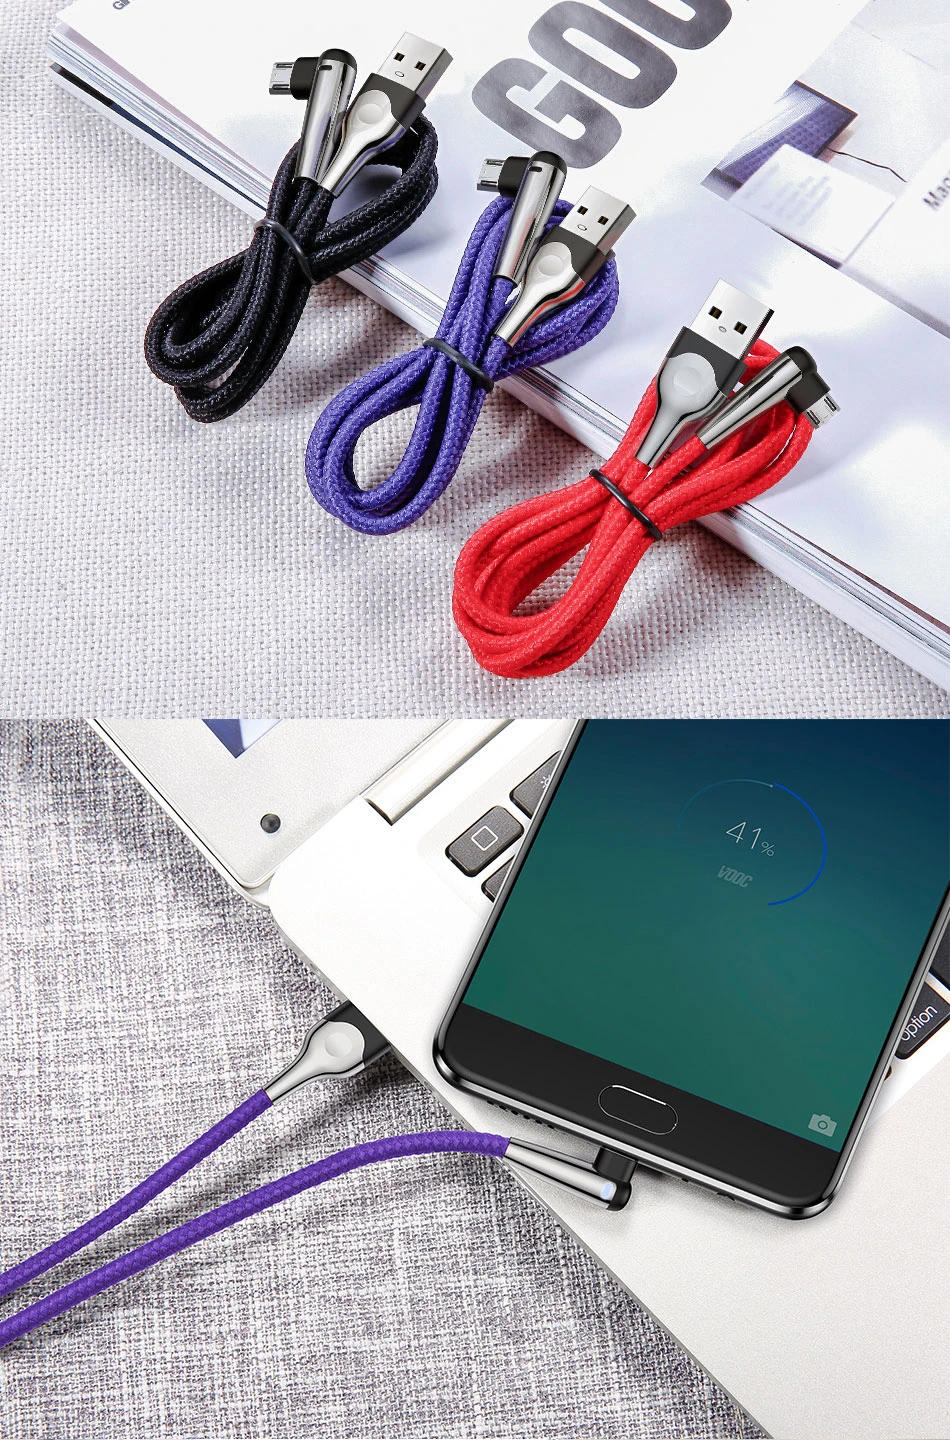 Baseus Lighting Micro USB кабель Реверсивный Быстрая Зарядка Кабель Microusb для samsung A7 Xiaomi Redmi Note 5 Android зарядное устройство